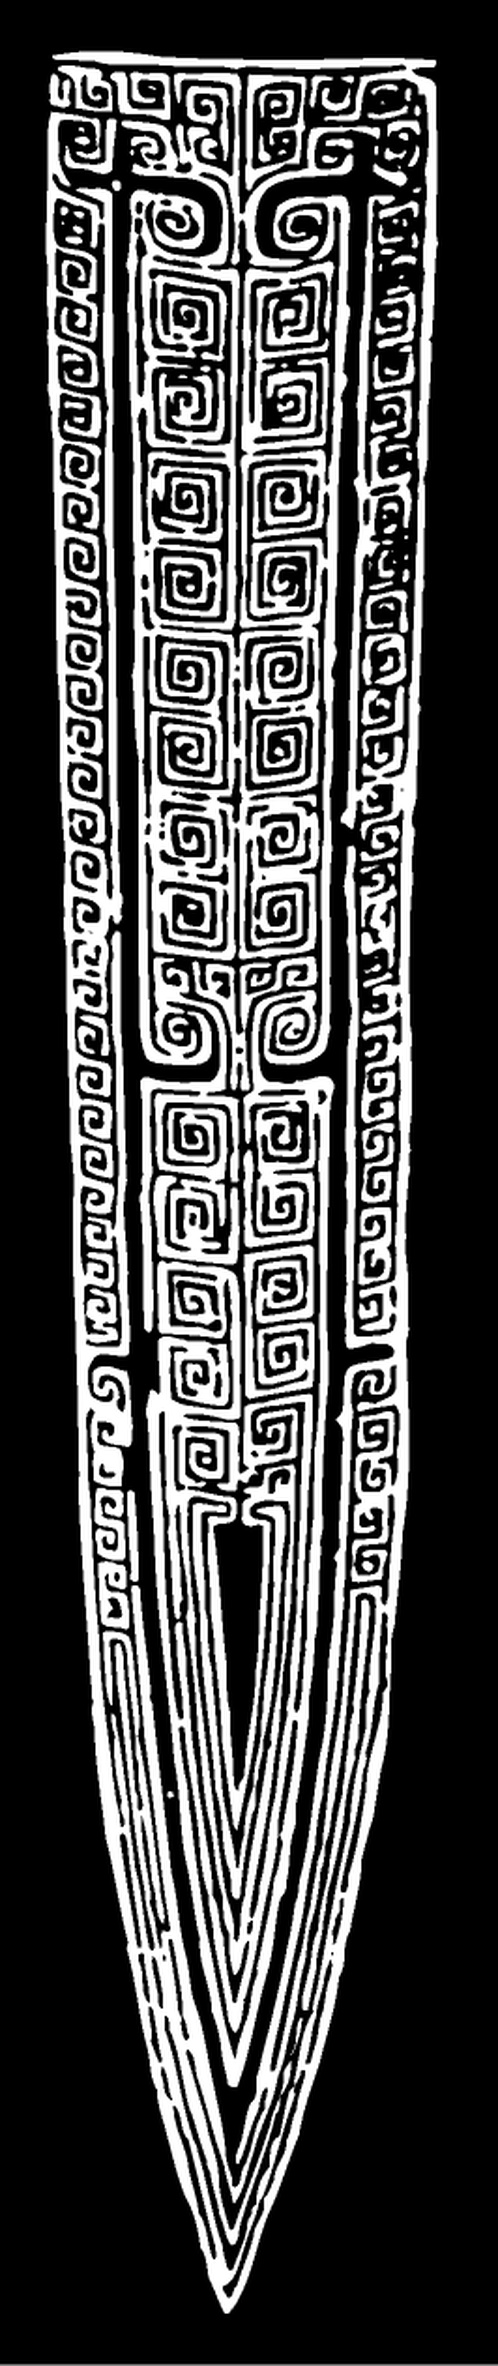 商周 商代晚期青铜器与纹样210603 (266x1264px 299)